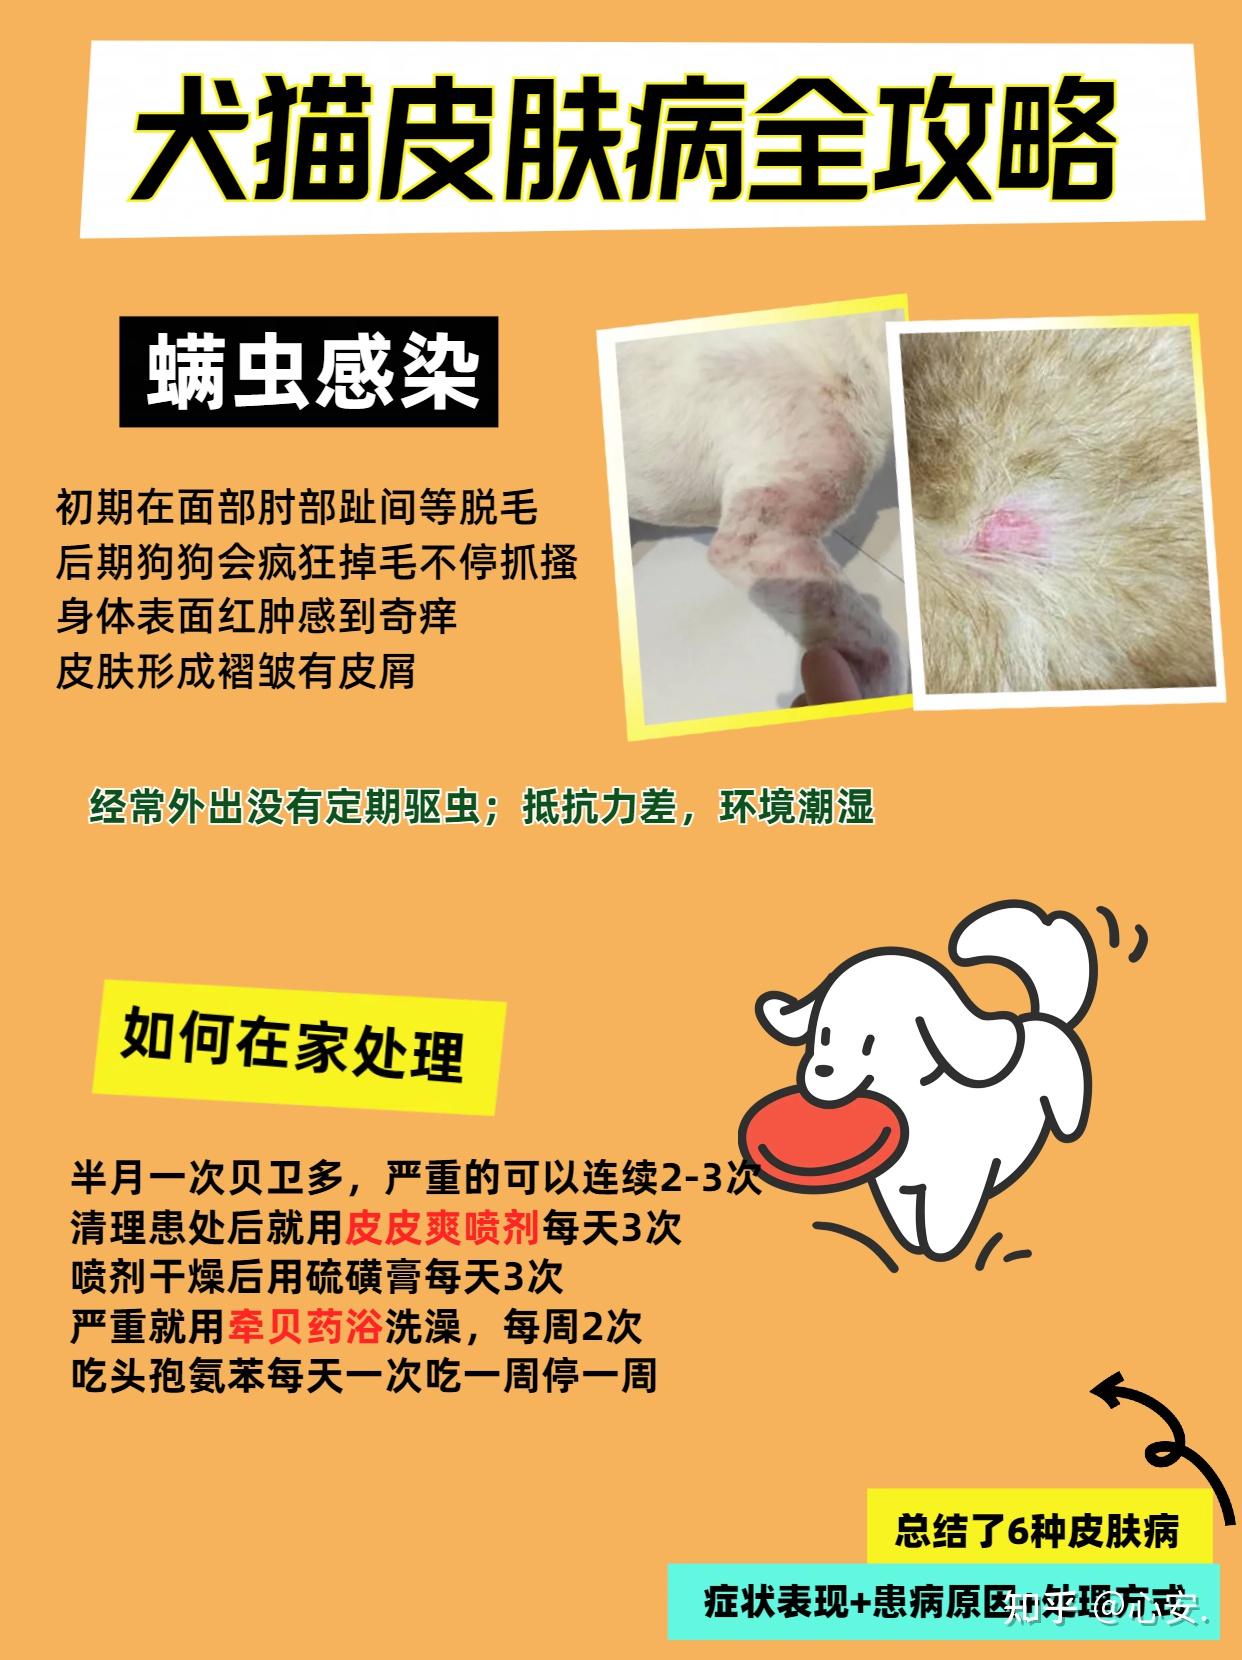 治疗犬猫皮肤性疾病——疖[ jiē ]及疖病的诊断以及治疗方案等 - 哔哩哔哩